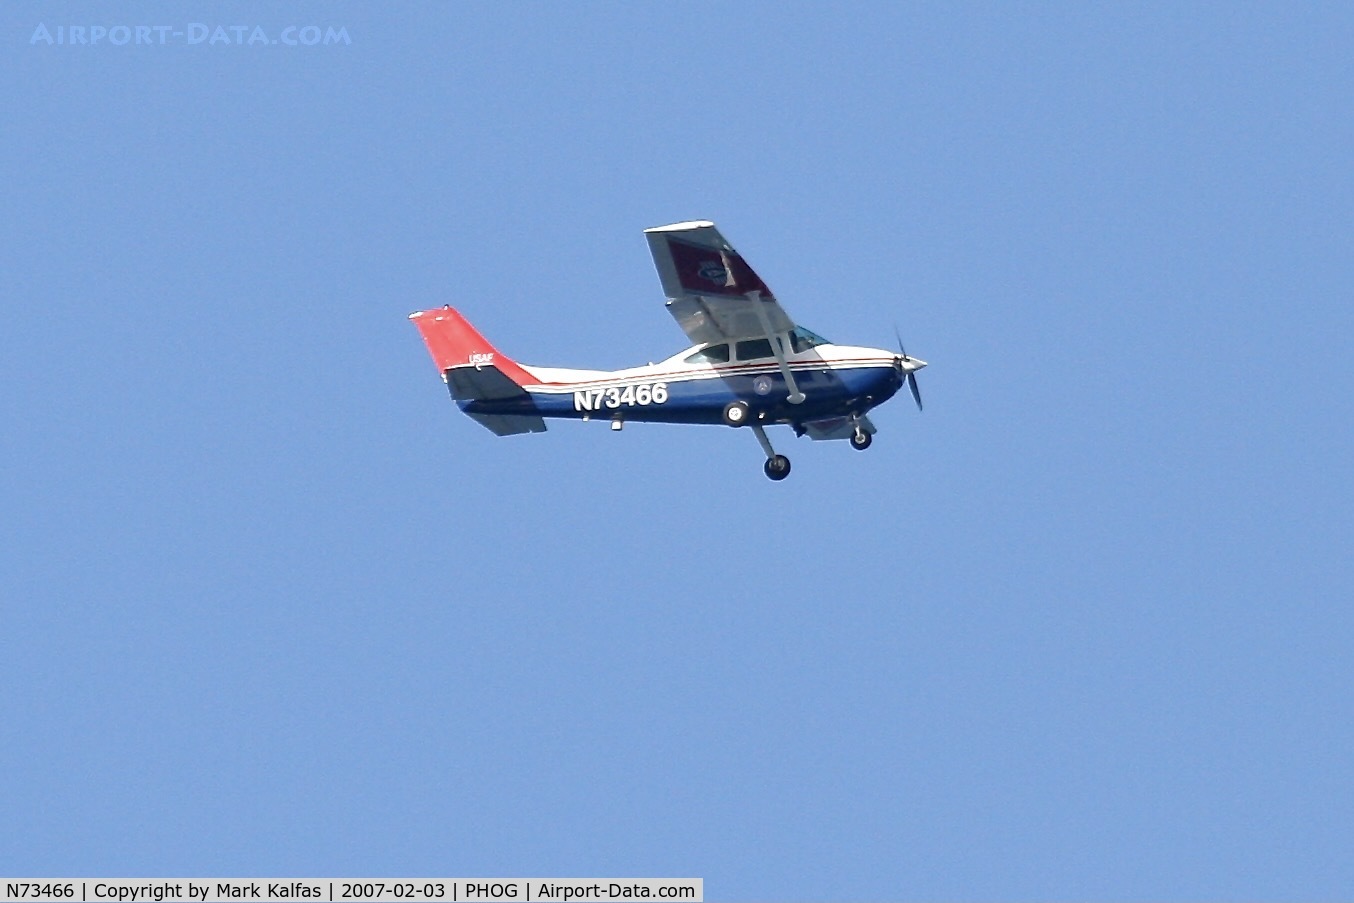 N73466, 1981 Cessna 182R Skylane C/N 18268113, Civil Air Patrol Cessna 182R, N73466 over Maalaea Bay, inbound to Kahului Airport